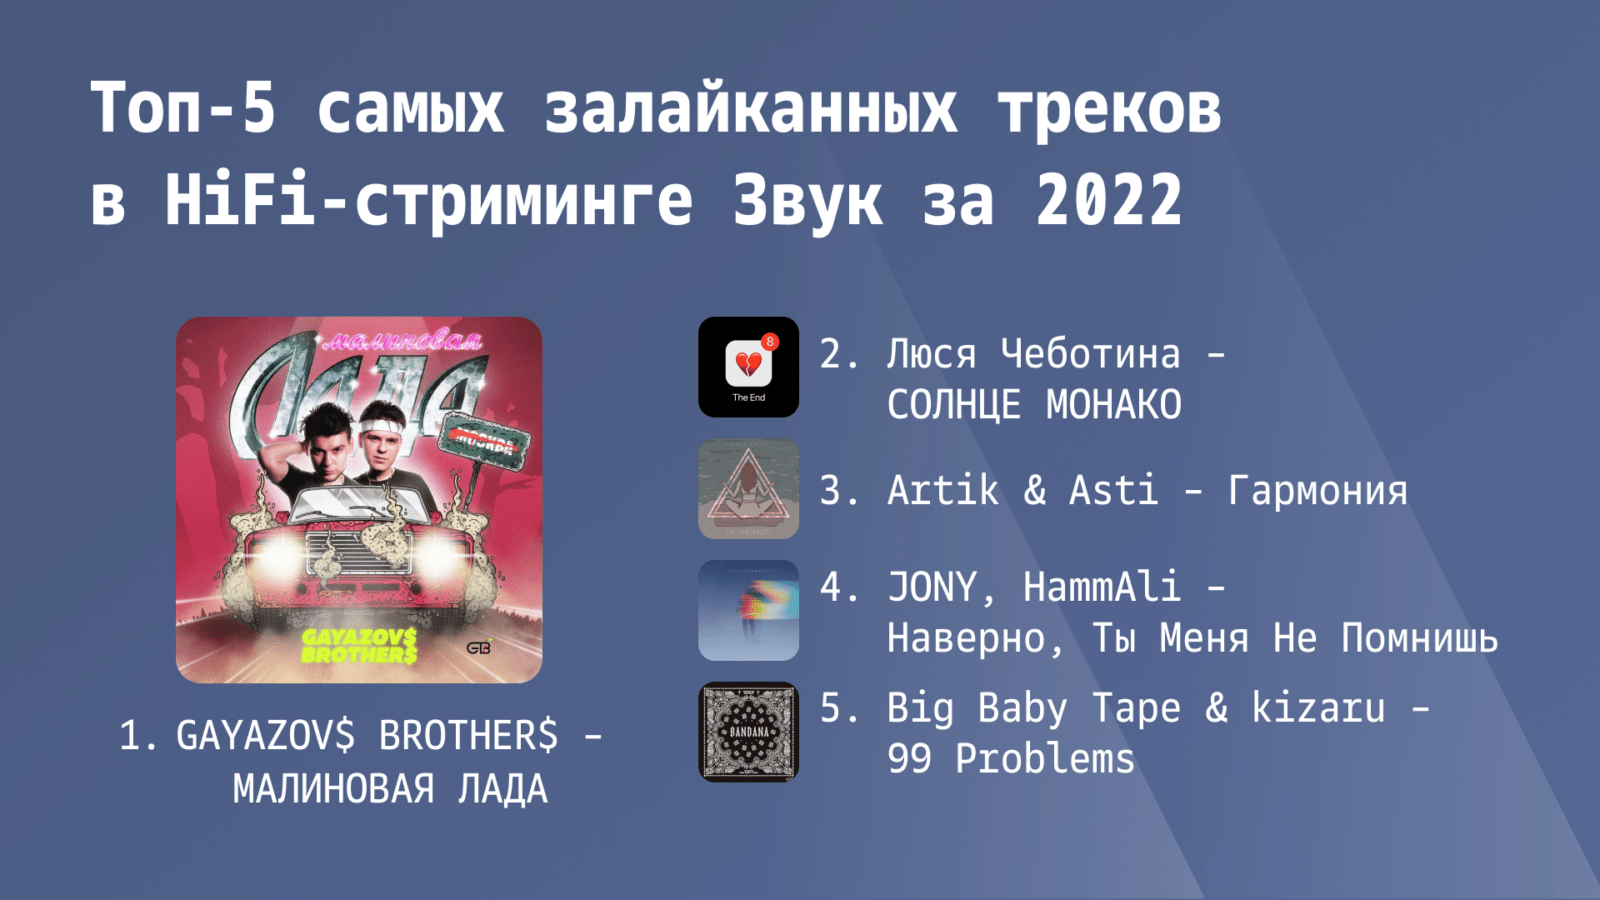 Стриминг Звук подвел музыкальные итоги 2022 года (6)